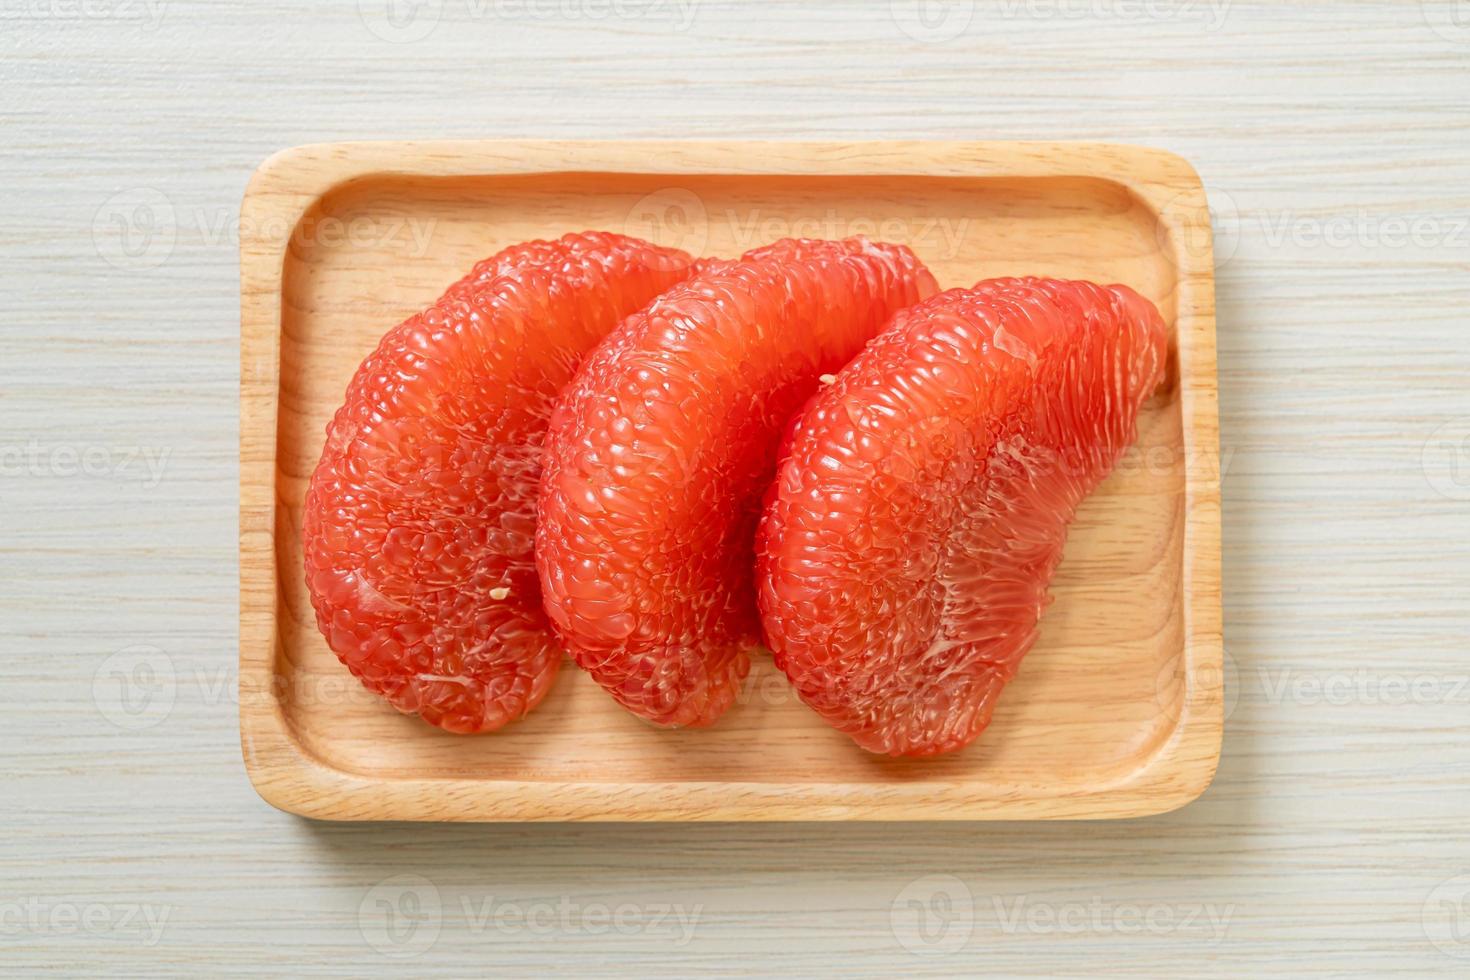 pomelo vermelho fresco ou toranja no prato foto